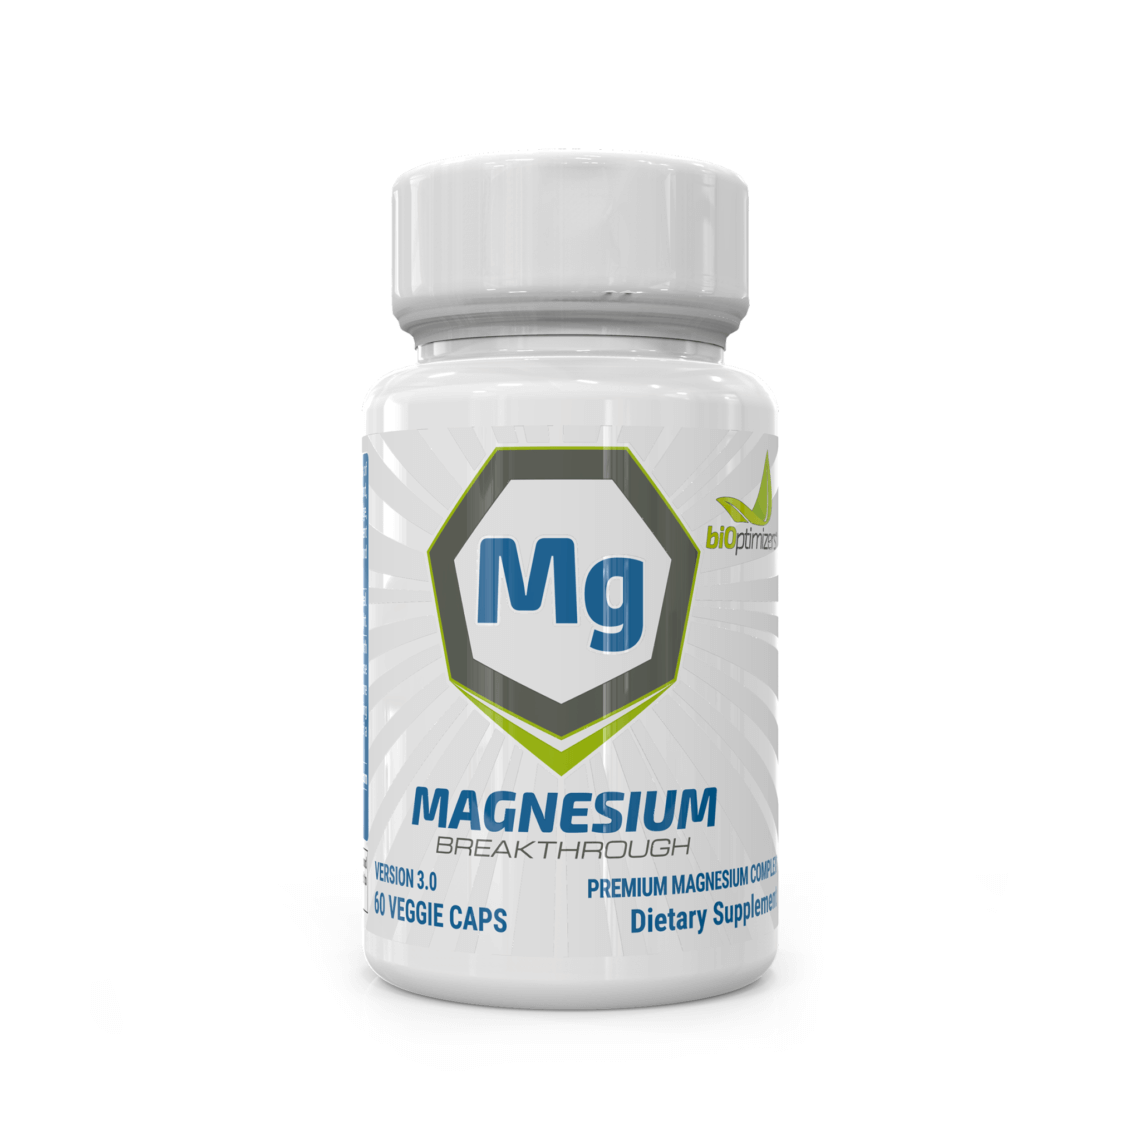 Magnesium Breakthrough Promo Code - Best Magnesium Citrate Supplement